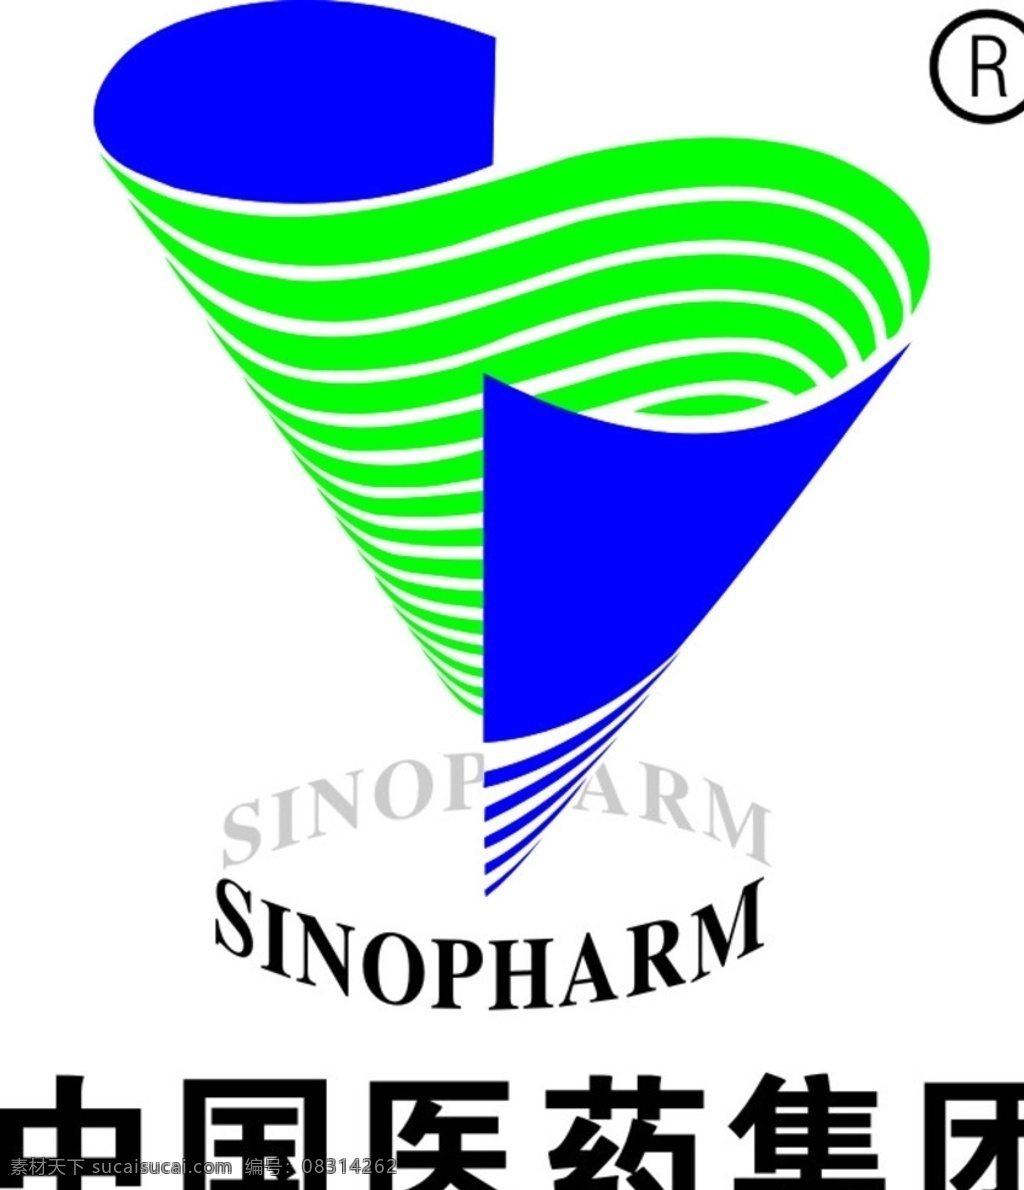 中国医药集团 中国 医药 集团 标志 logo 图标 蓝色 绿色 商标